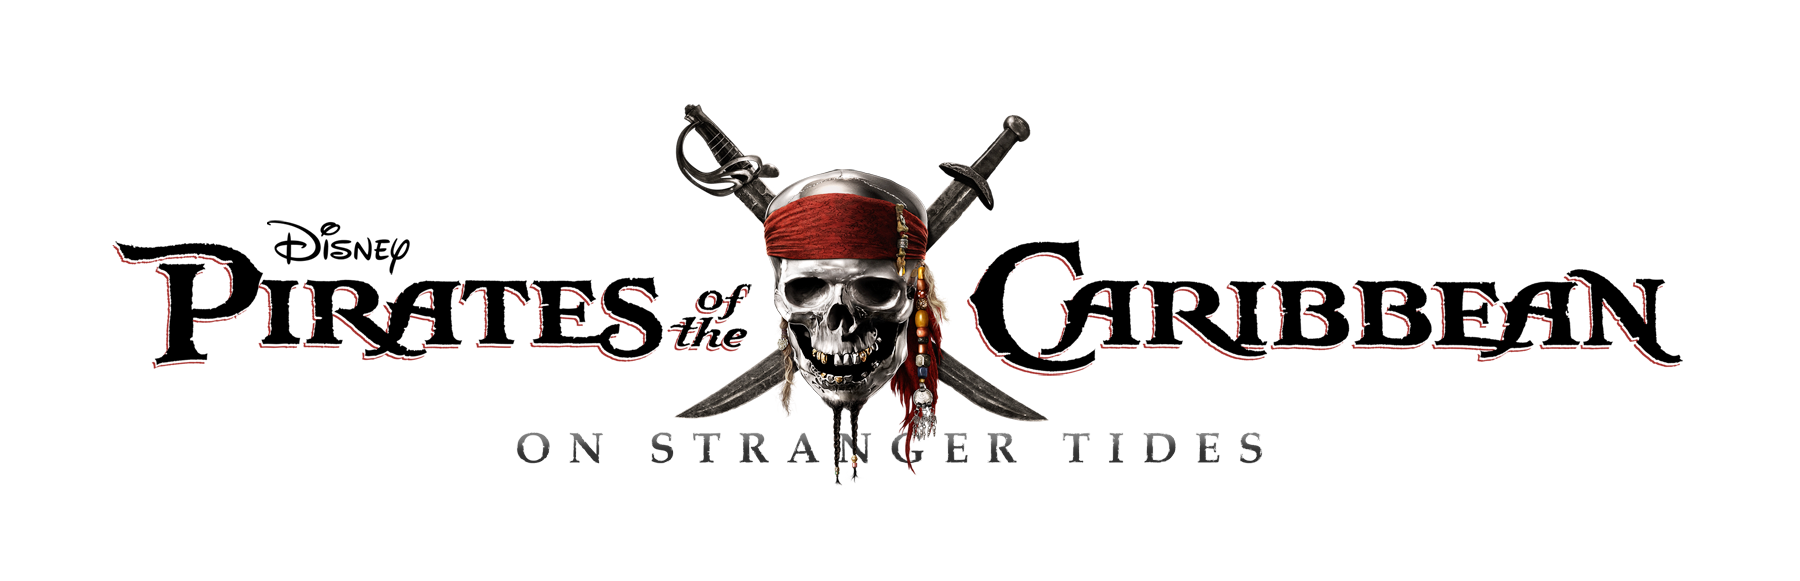 Logo pirate Image Transparente